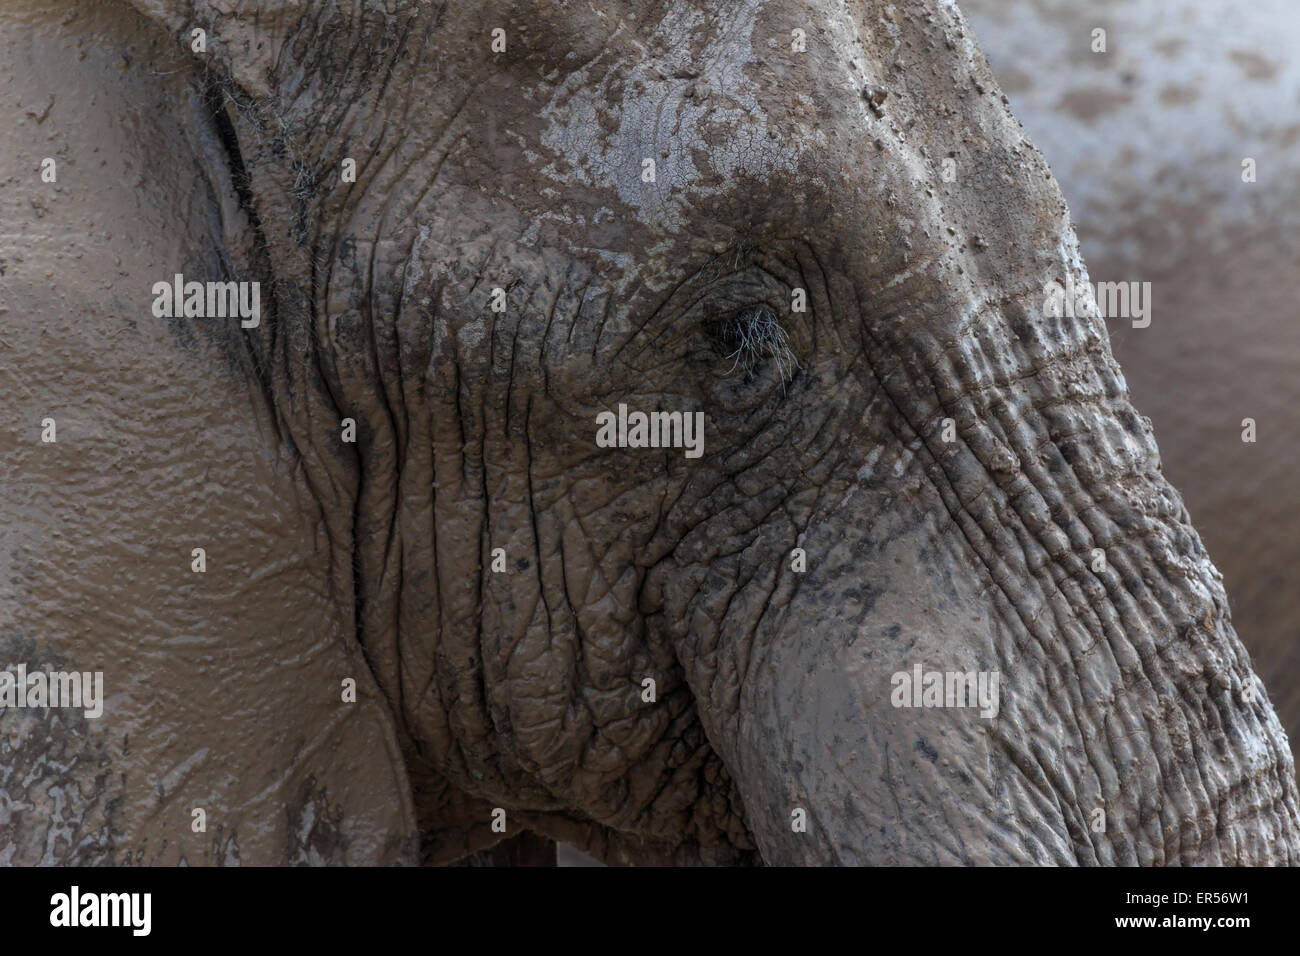 Nahaufnahme eines Elefanten Gesichtes. Noch einen Elefanten in den Rücken entsteht ein komplett graues Bild. Stockfoto